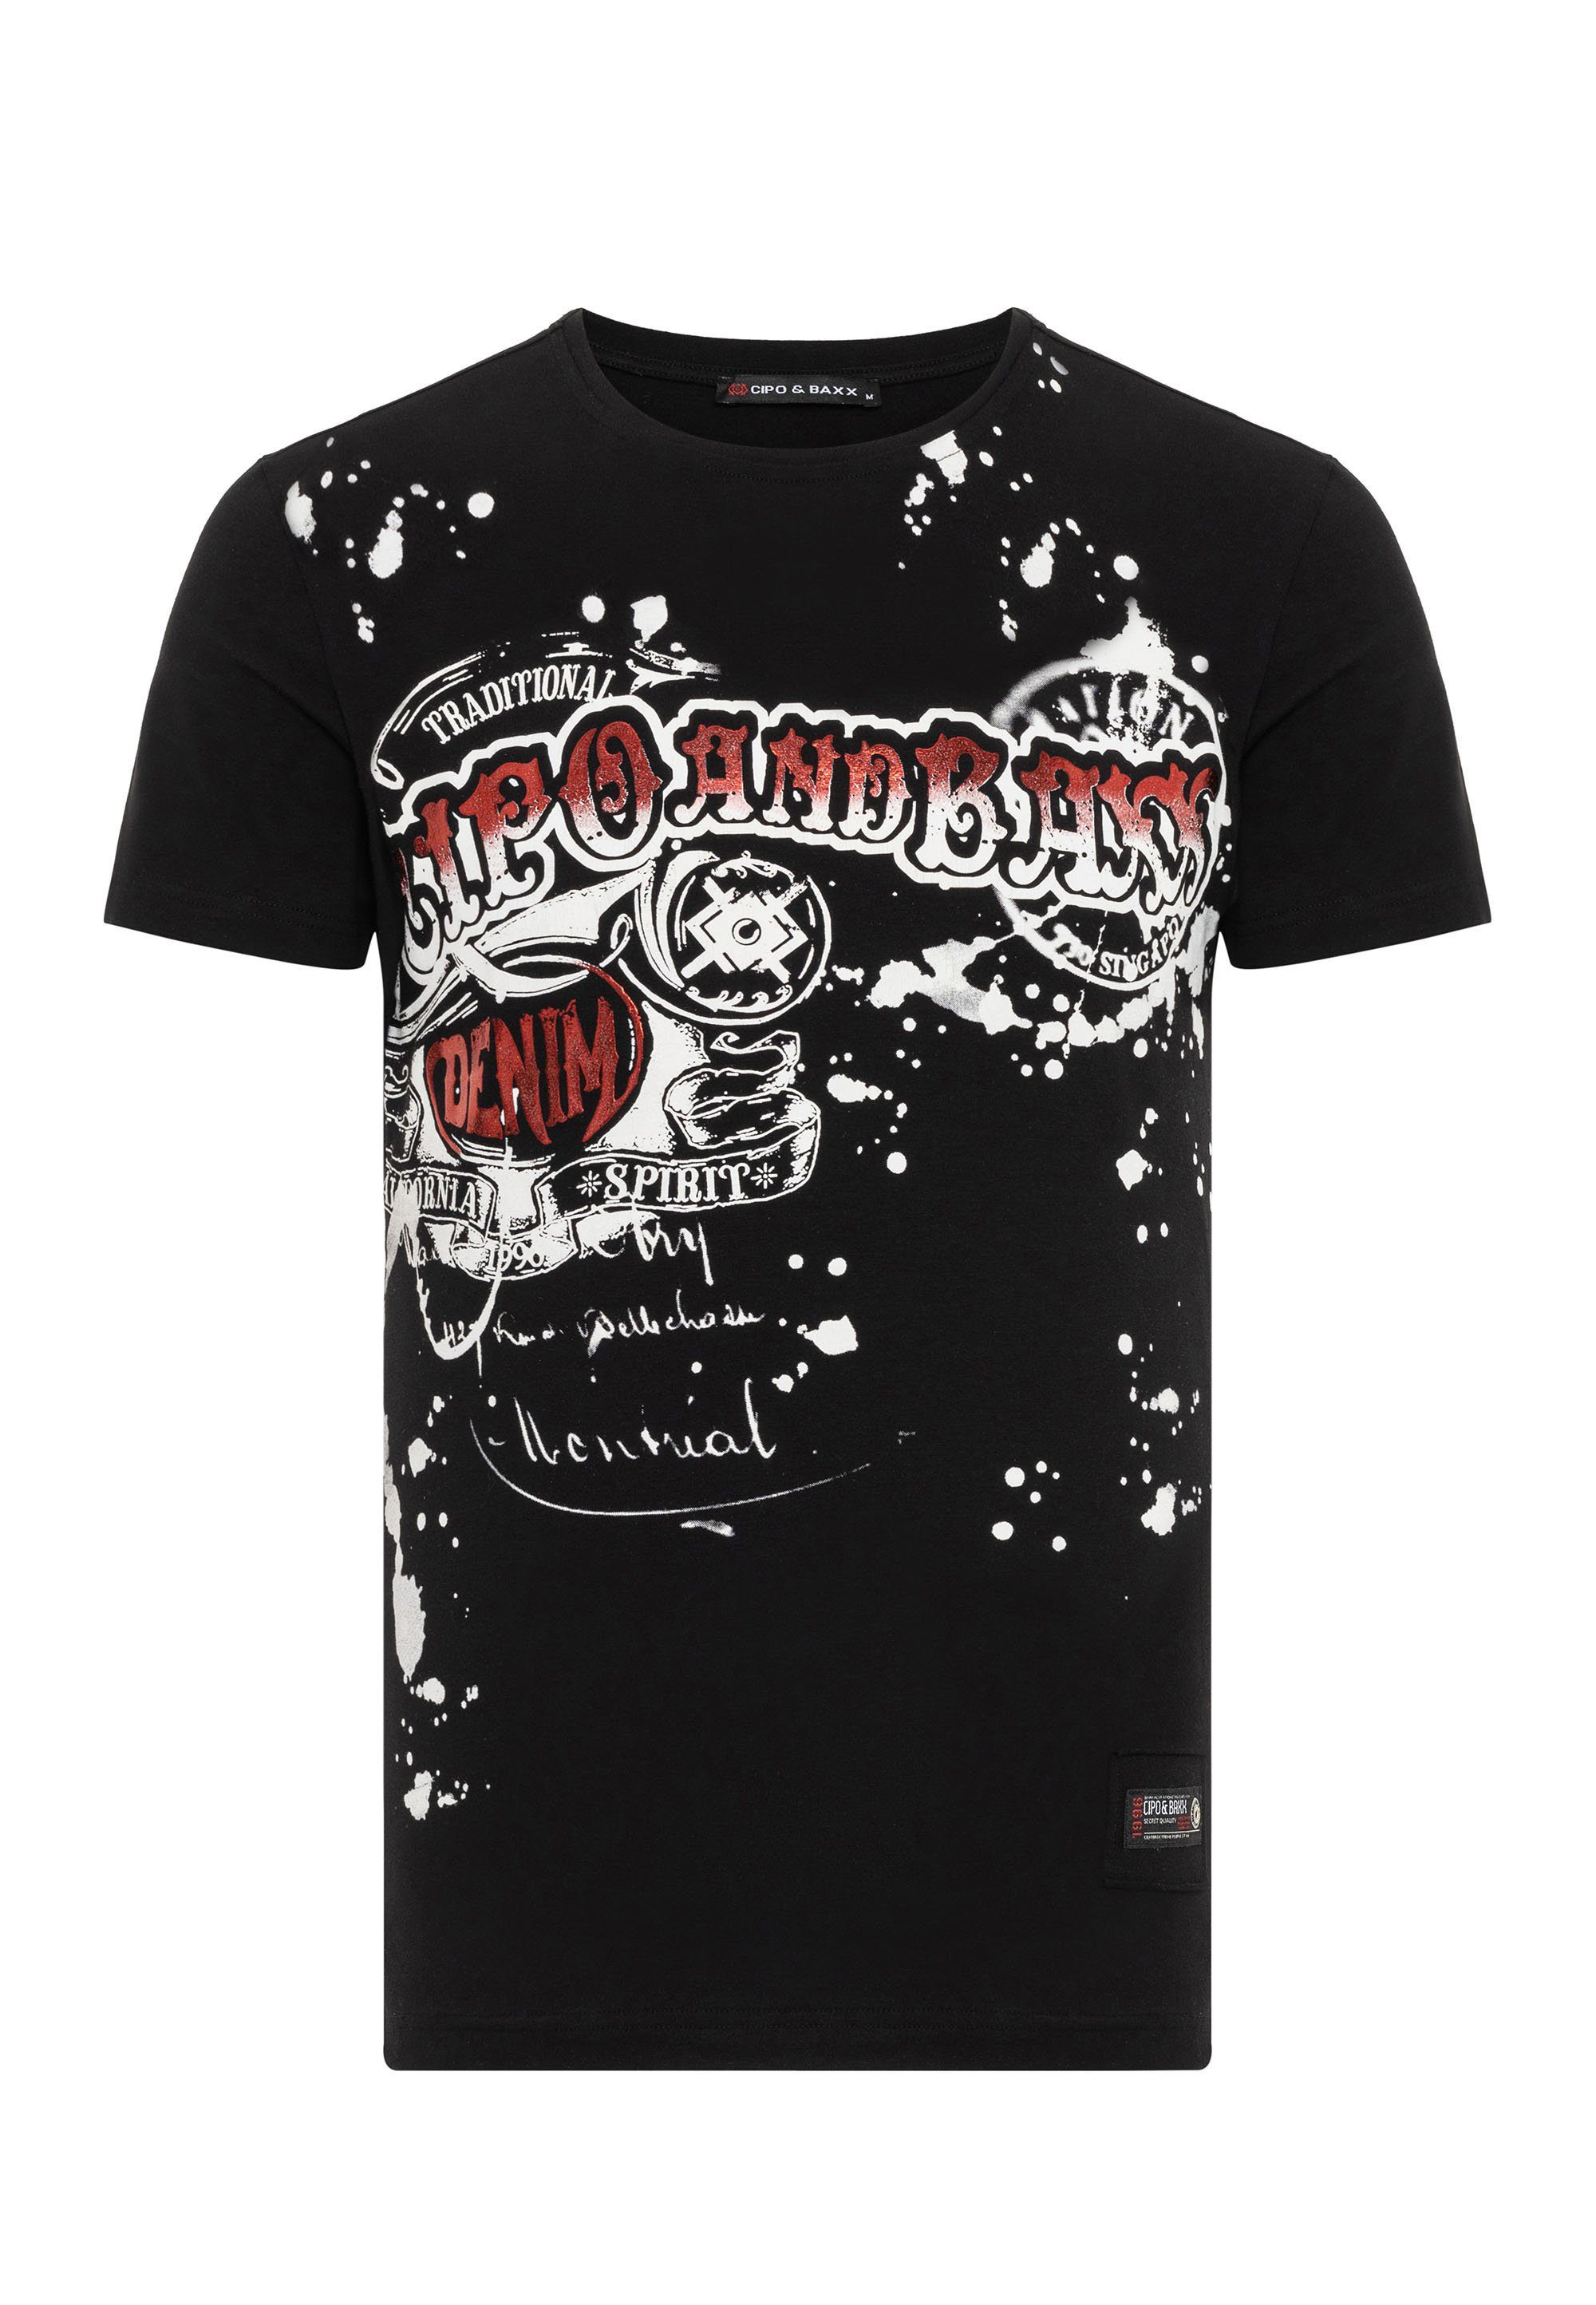 Cipo Markenprint coolem & Baxx T-Shirt mit schwarz